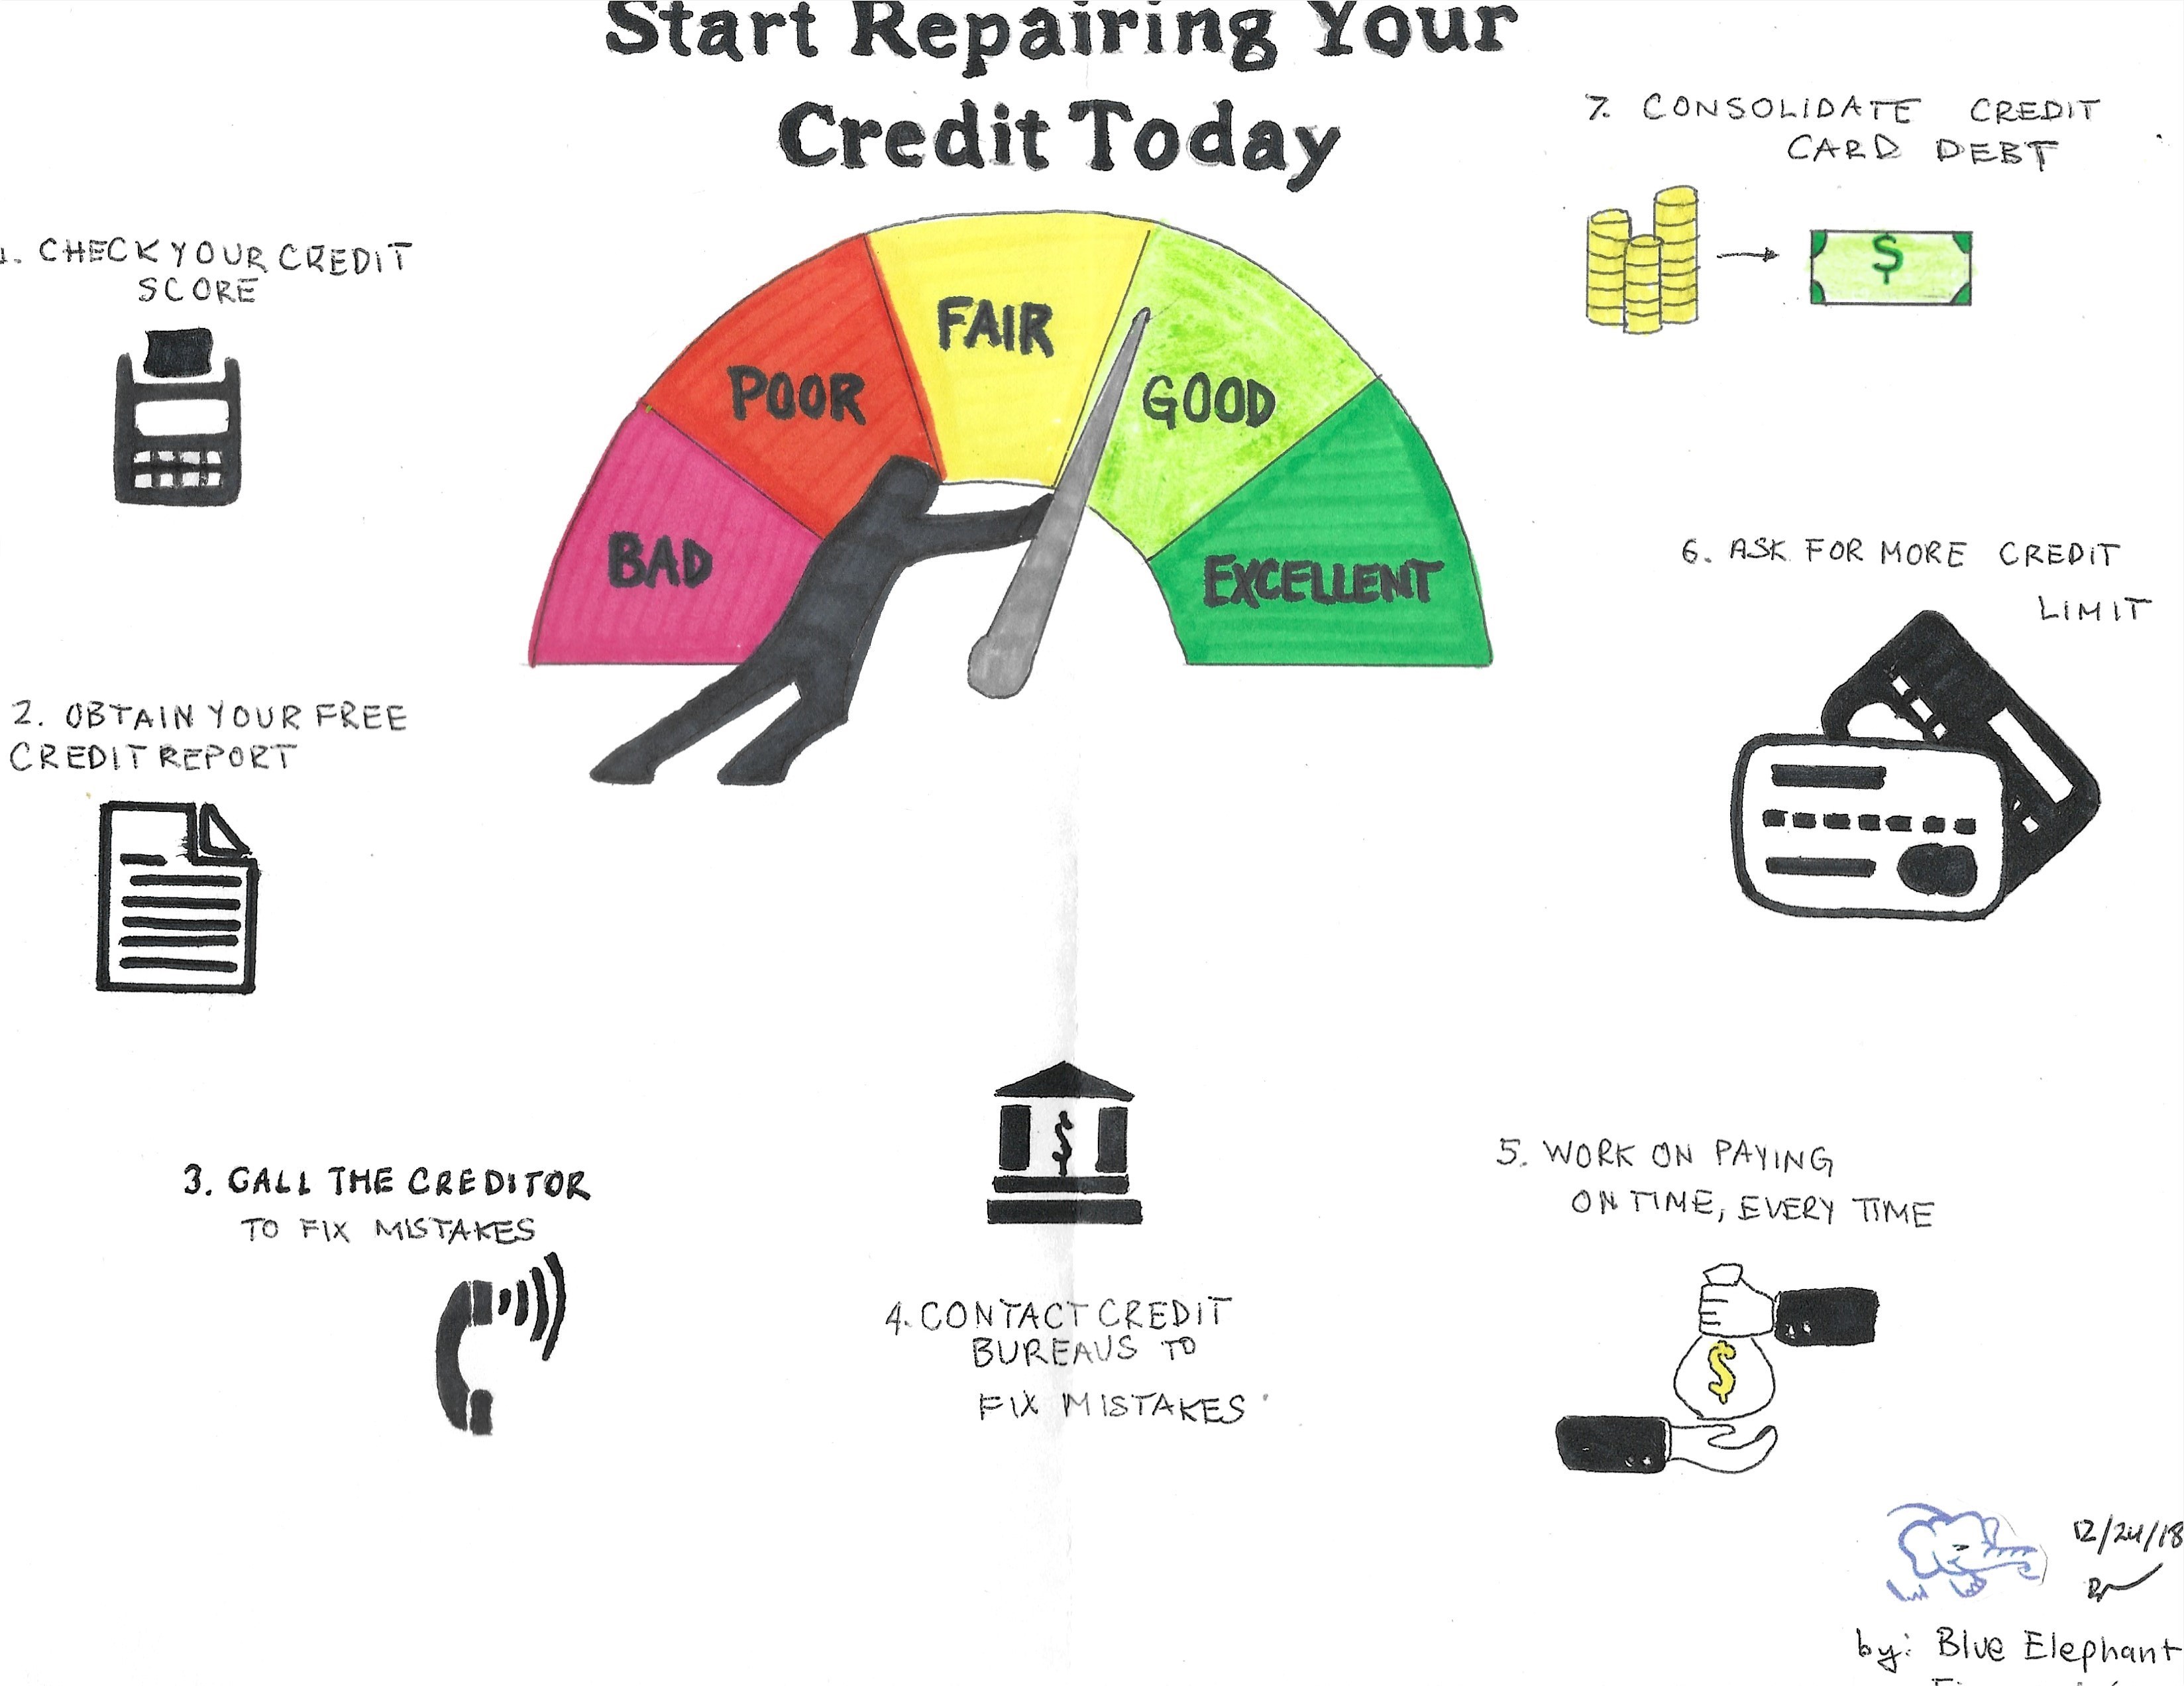 Repair Your Credit Today by Brian Nwokedi